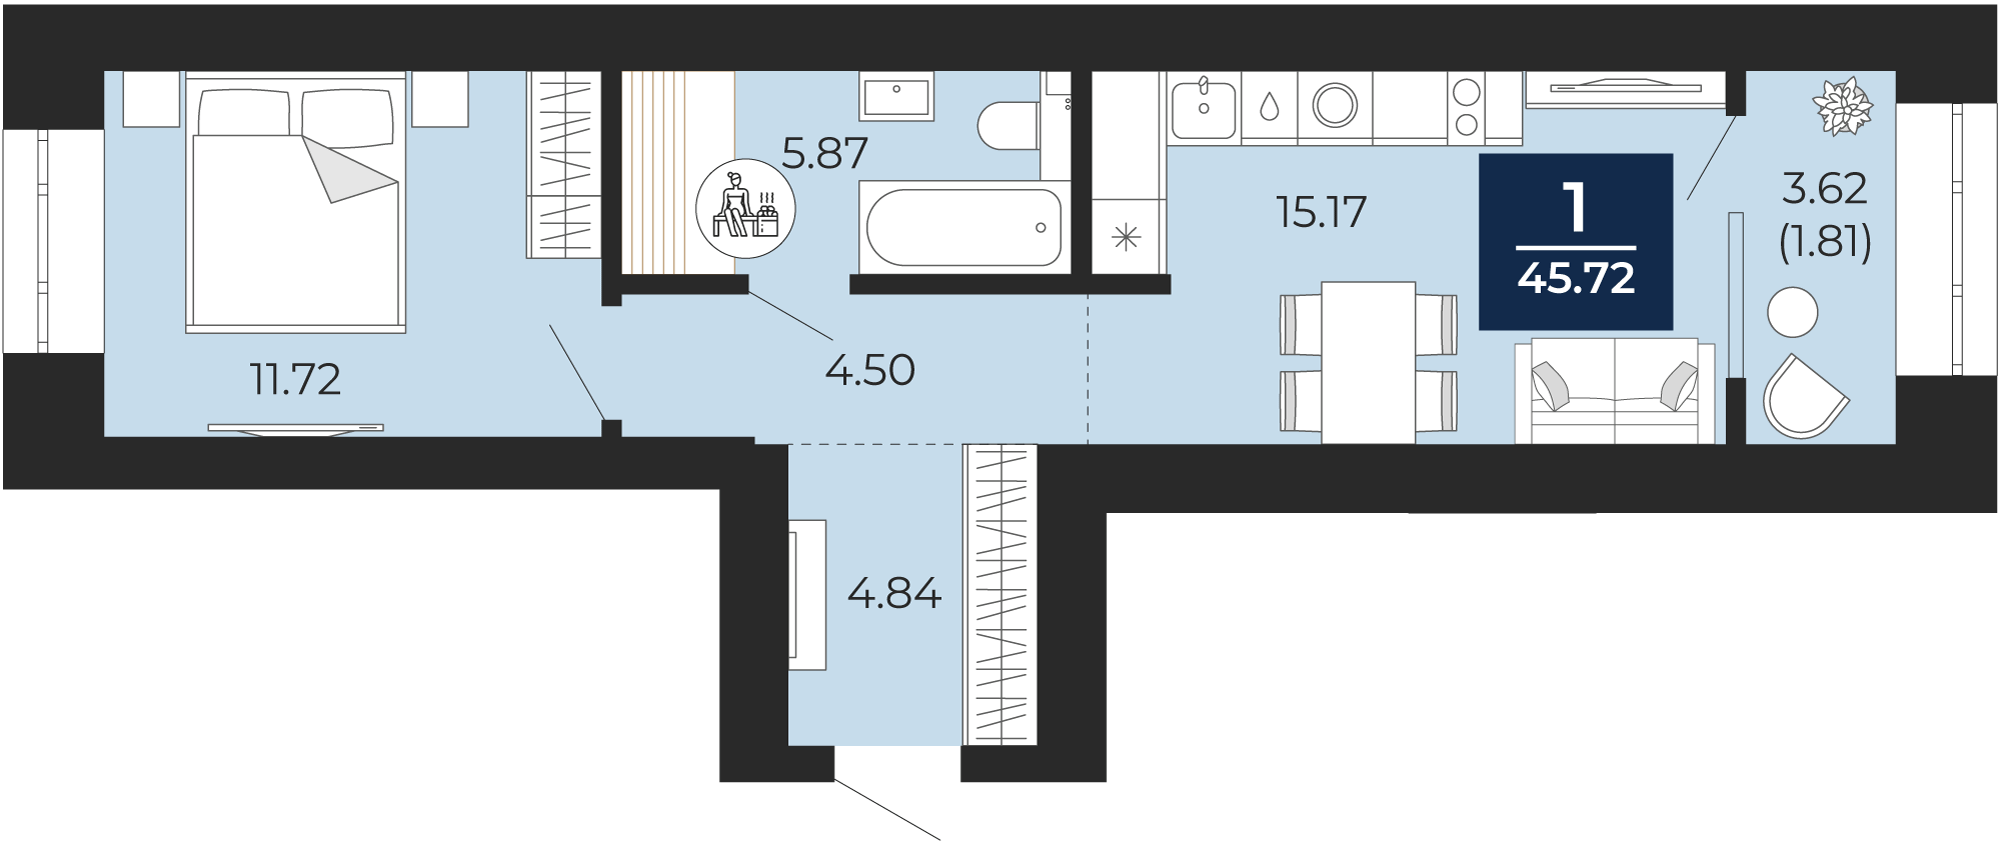 Квартира № 133, 1-комнатная, 45.72 кв. м, 2 этаж